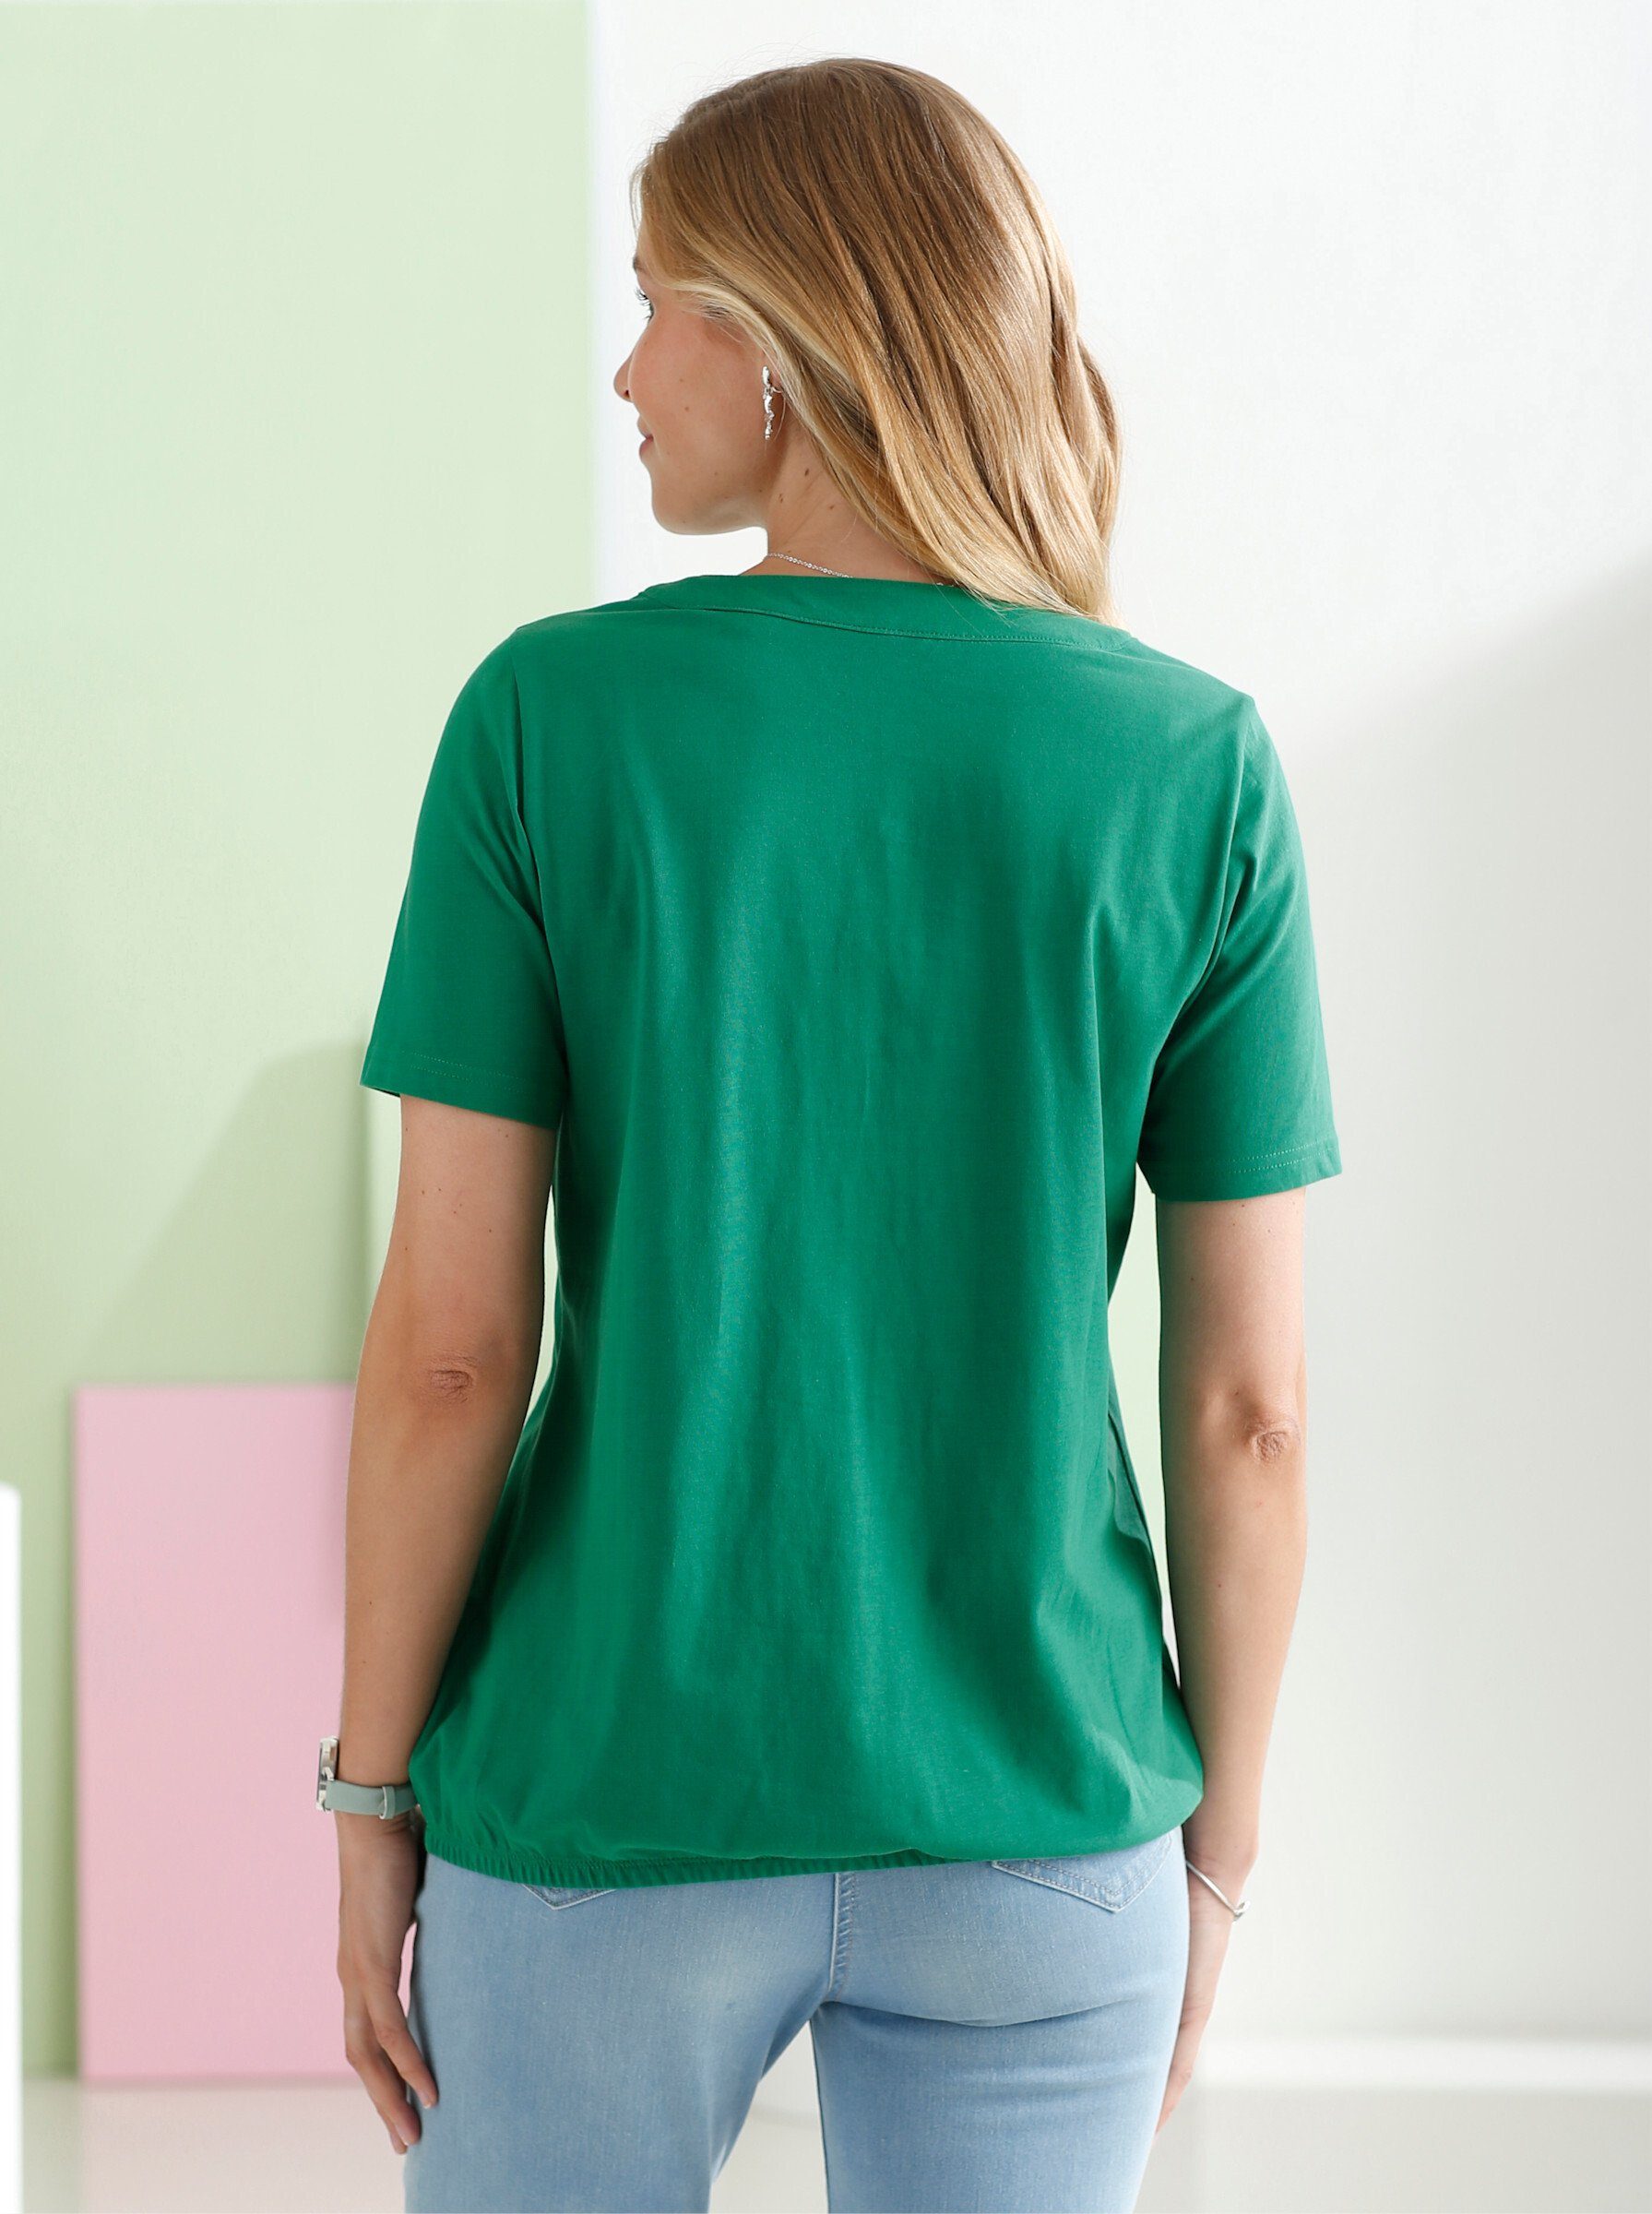 grün an! Sieh T-Shirt